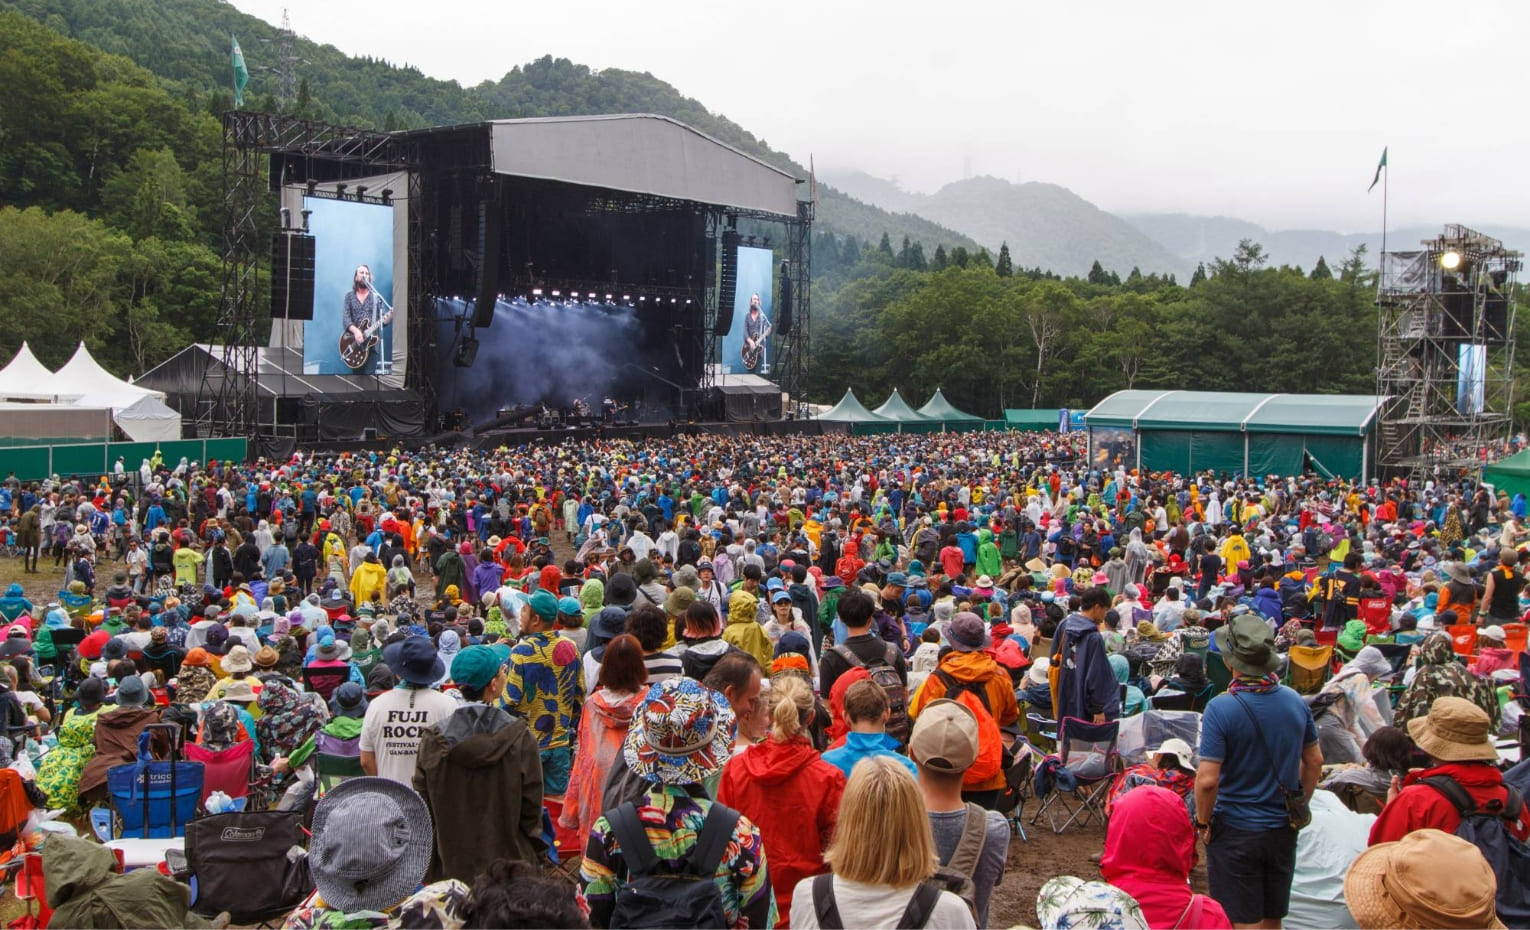 جشنواره راک فوجی، جشنی از موسیقی و طبیعت در ژاپن